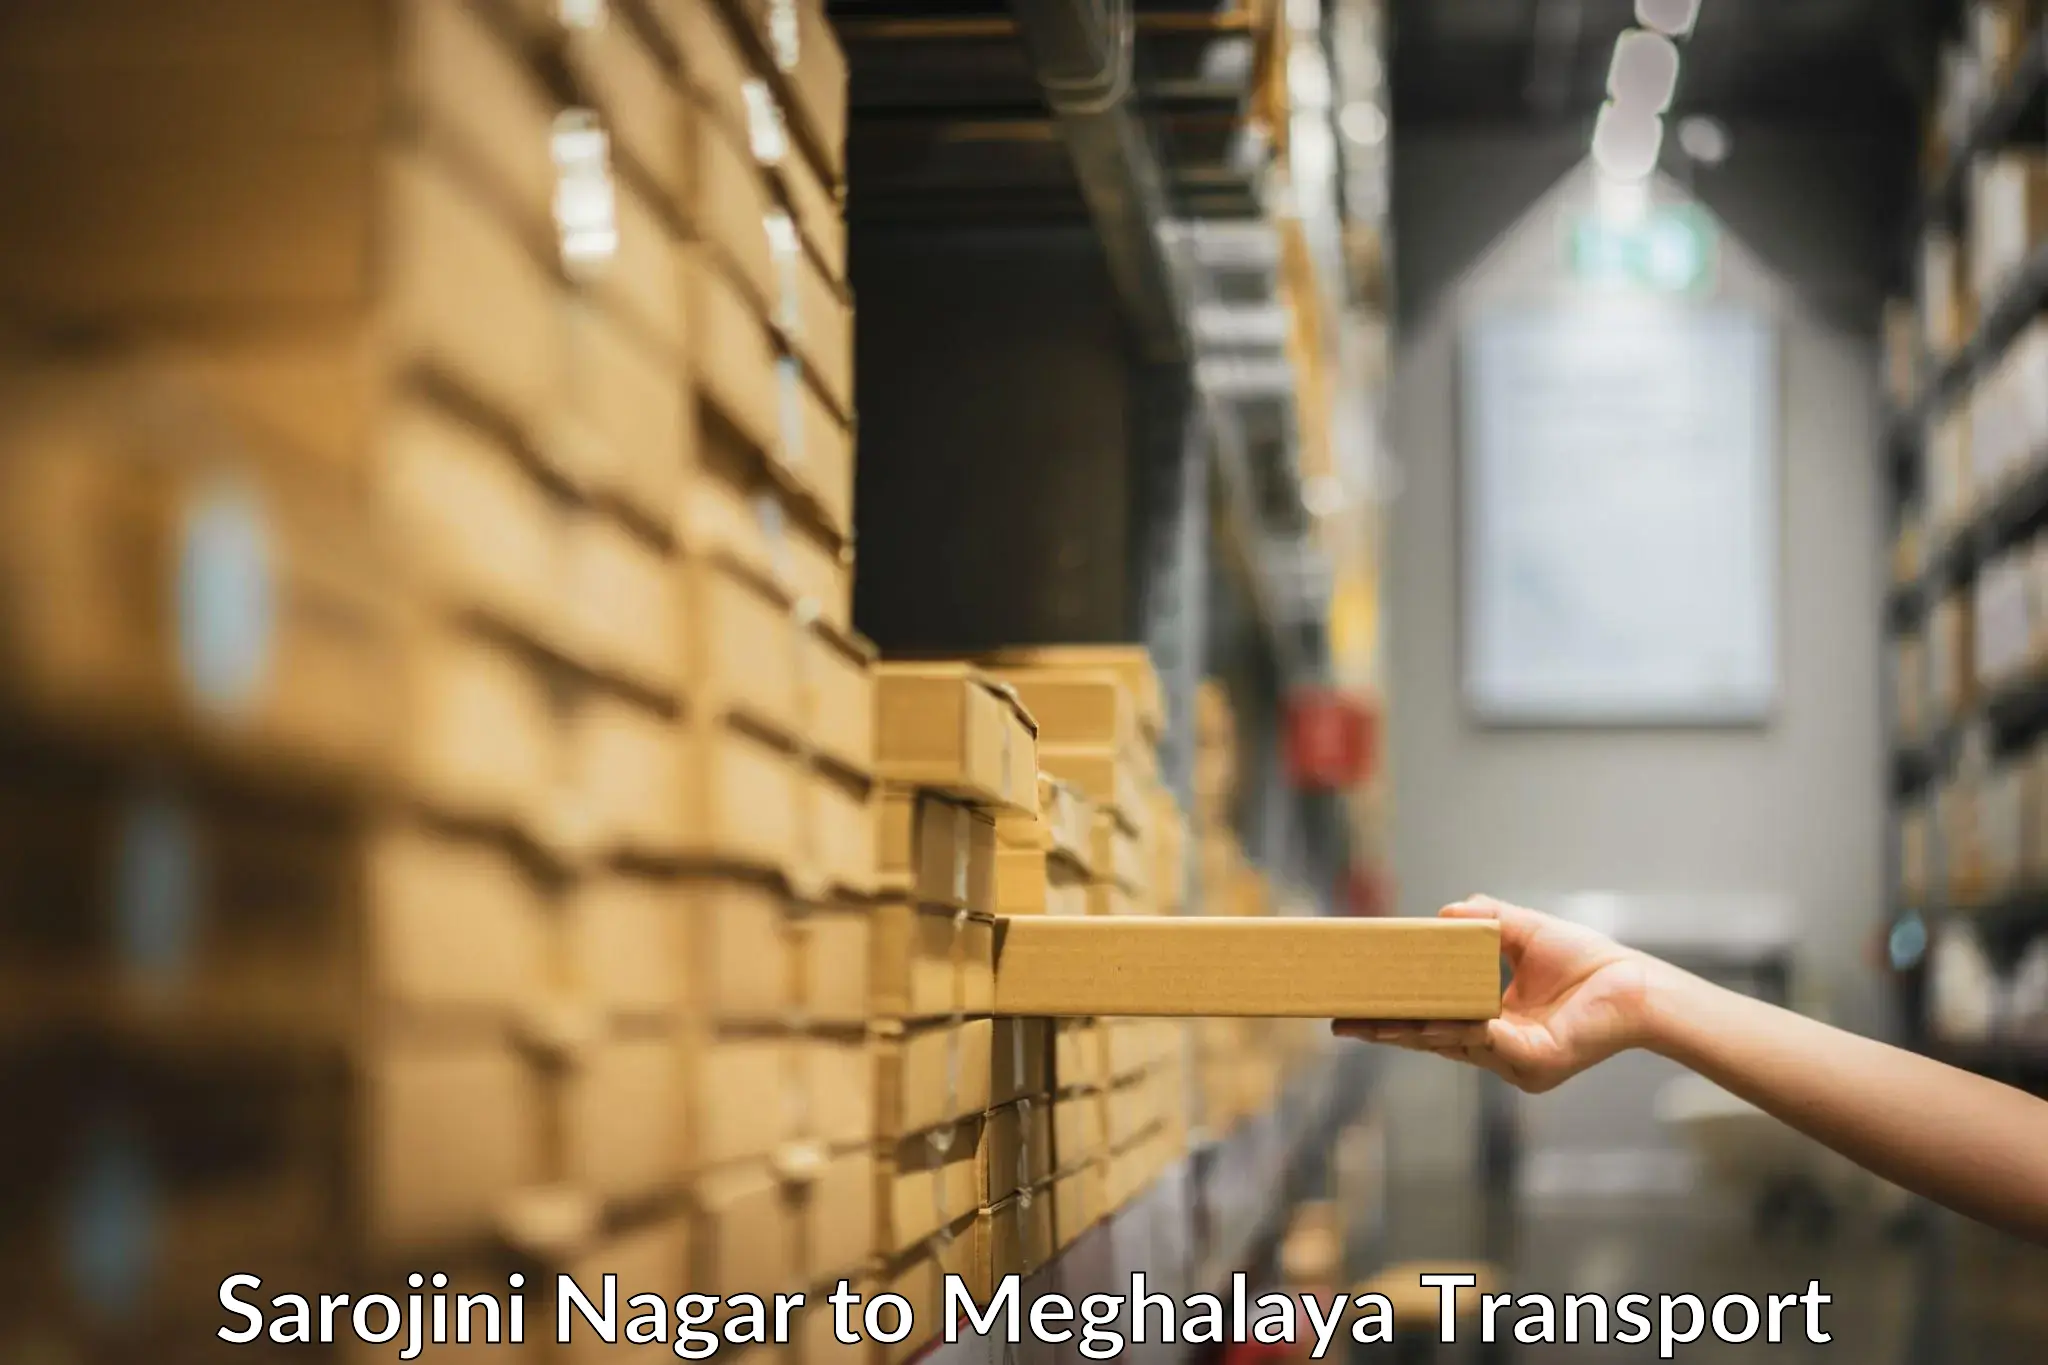 Container transport service Sarojini Nagar to Meghalaya